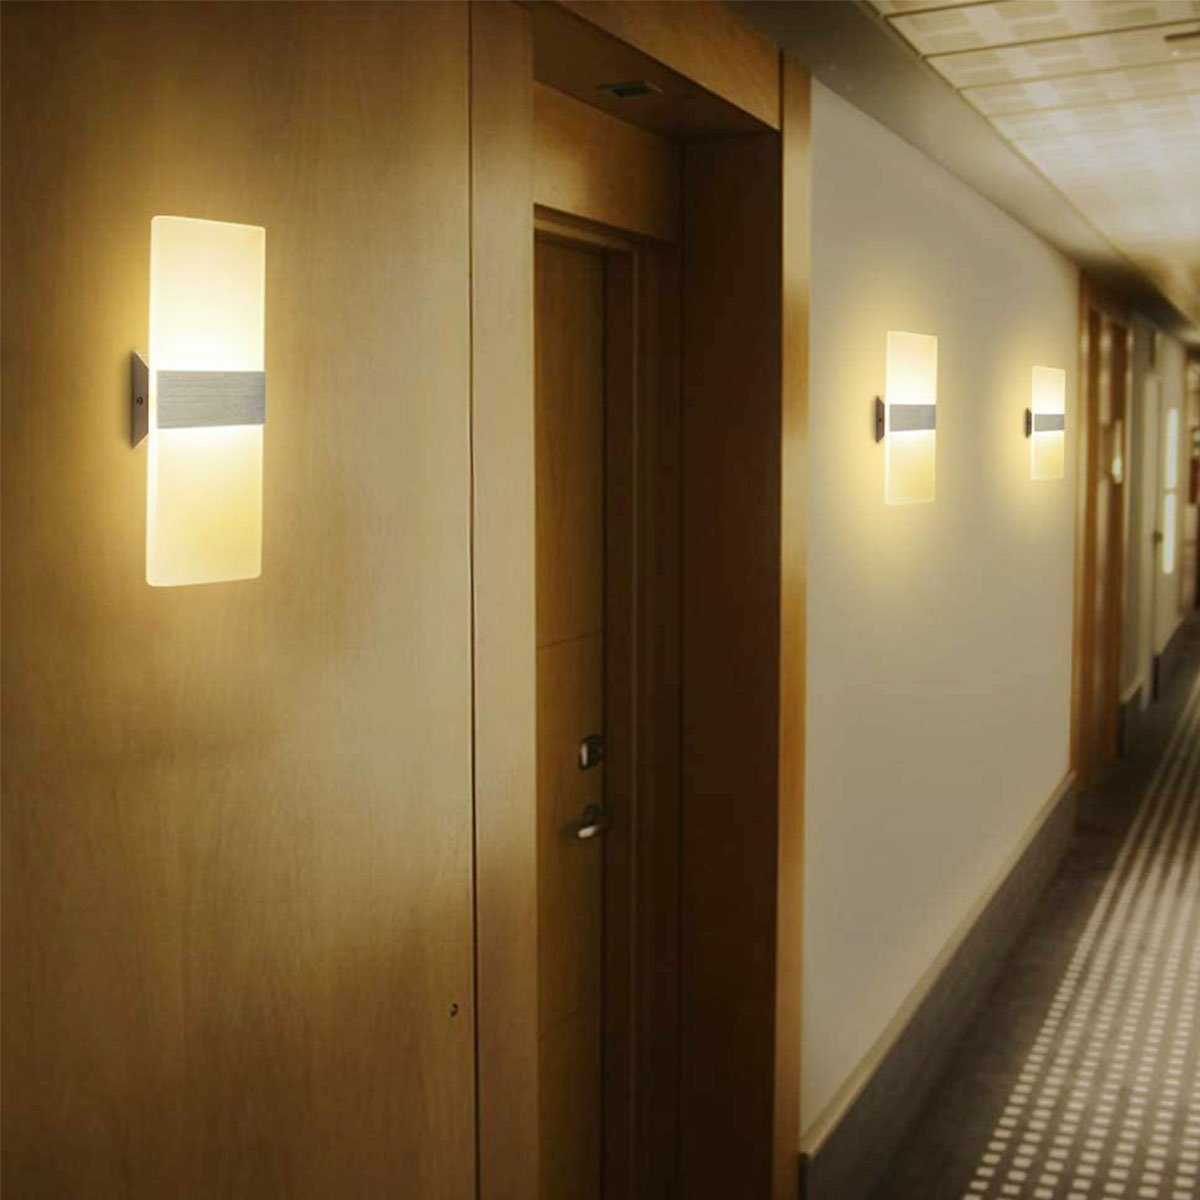 LED LED Innen integriert, LED Wandleuchte LETGOSPT Fernbedienug, Wandlampe Stück Schlafzimmer fest für 2 Wandleuchten Modern aus Acryl / Mit Flur / Kaltweiß/Naturweiß/Warmweiß, Wohnzimmer / 12W Treppenhaus Wandleuchte